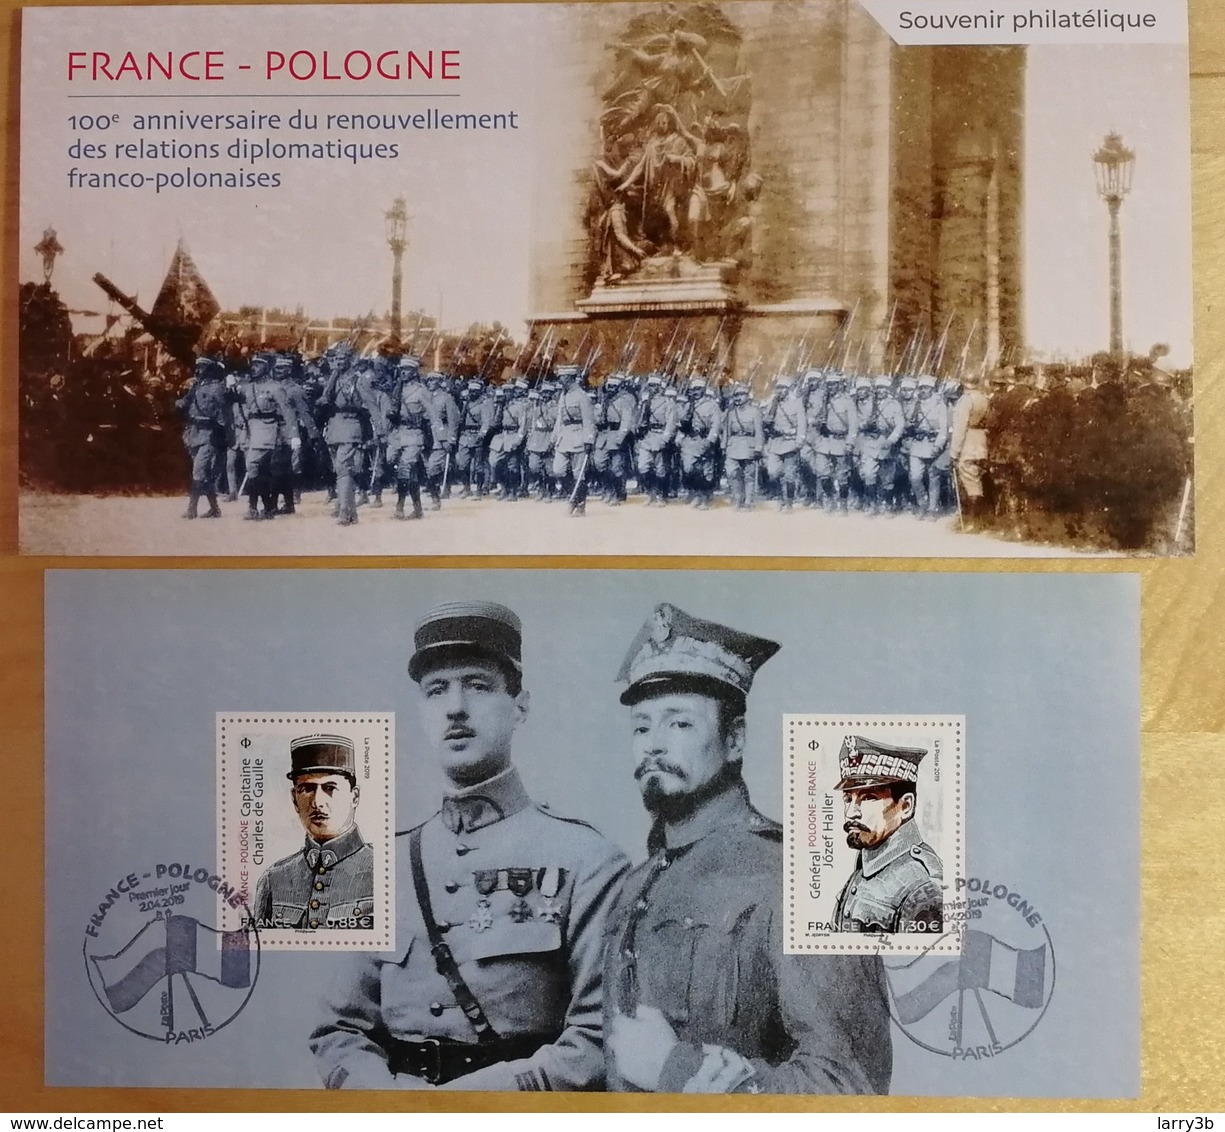 BS 2019 - BLOC SOUVENIR - FRANCE - POLOGNE - "100e Anniversaire Relation Diplomatique" - Oblitéré 1er JOUR - 02/04/2019 - Blocs Souvenir